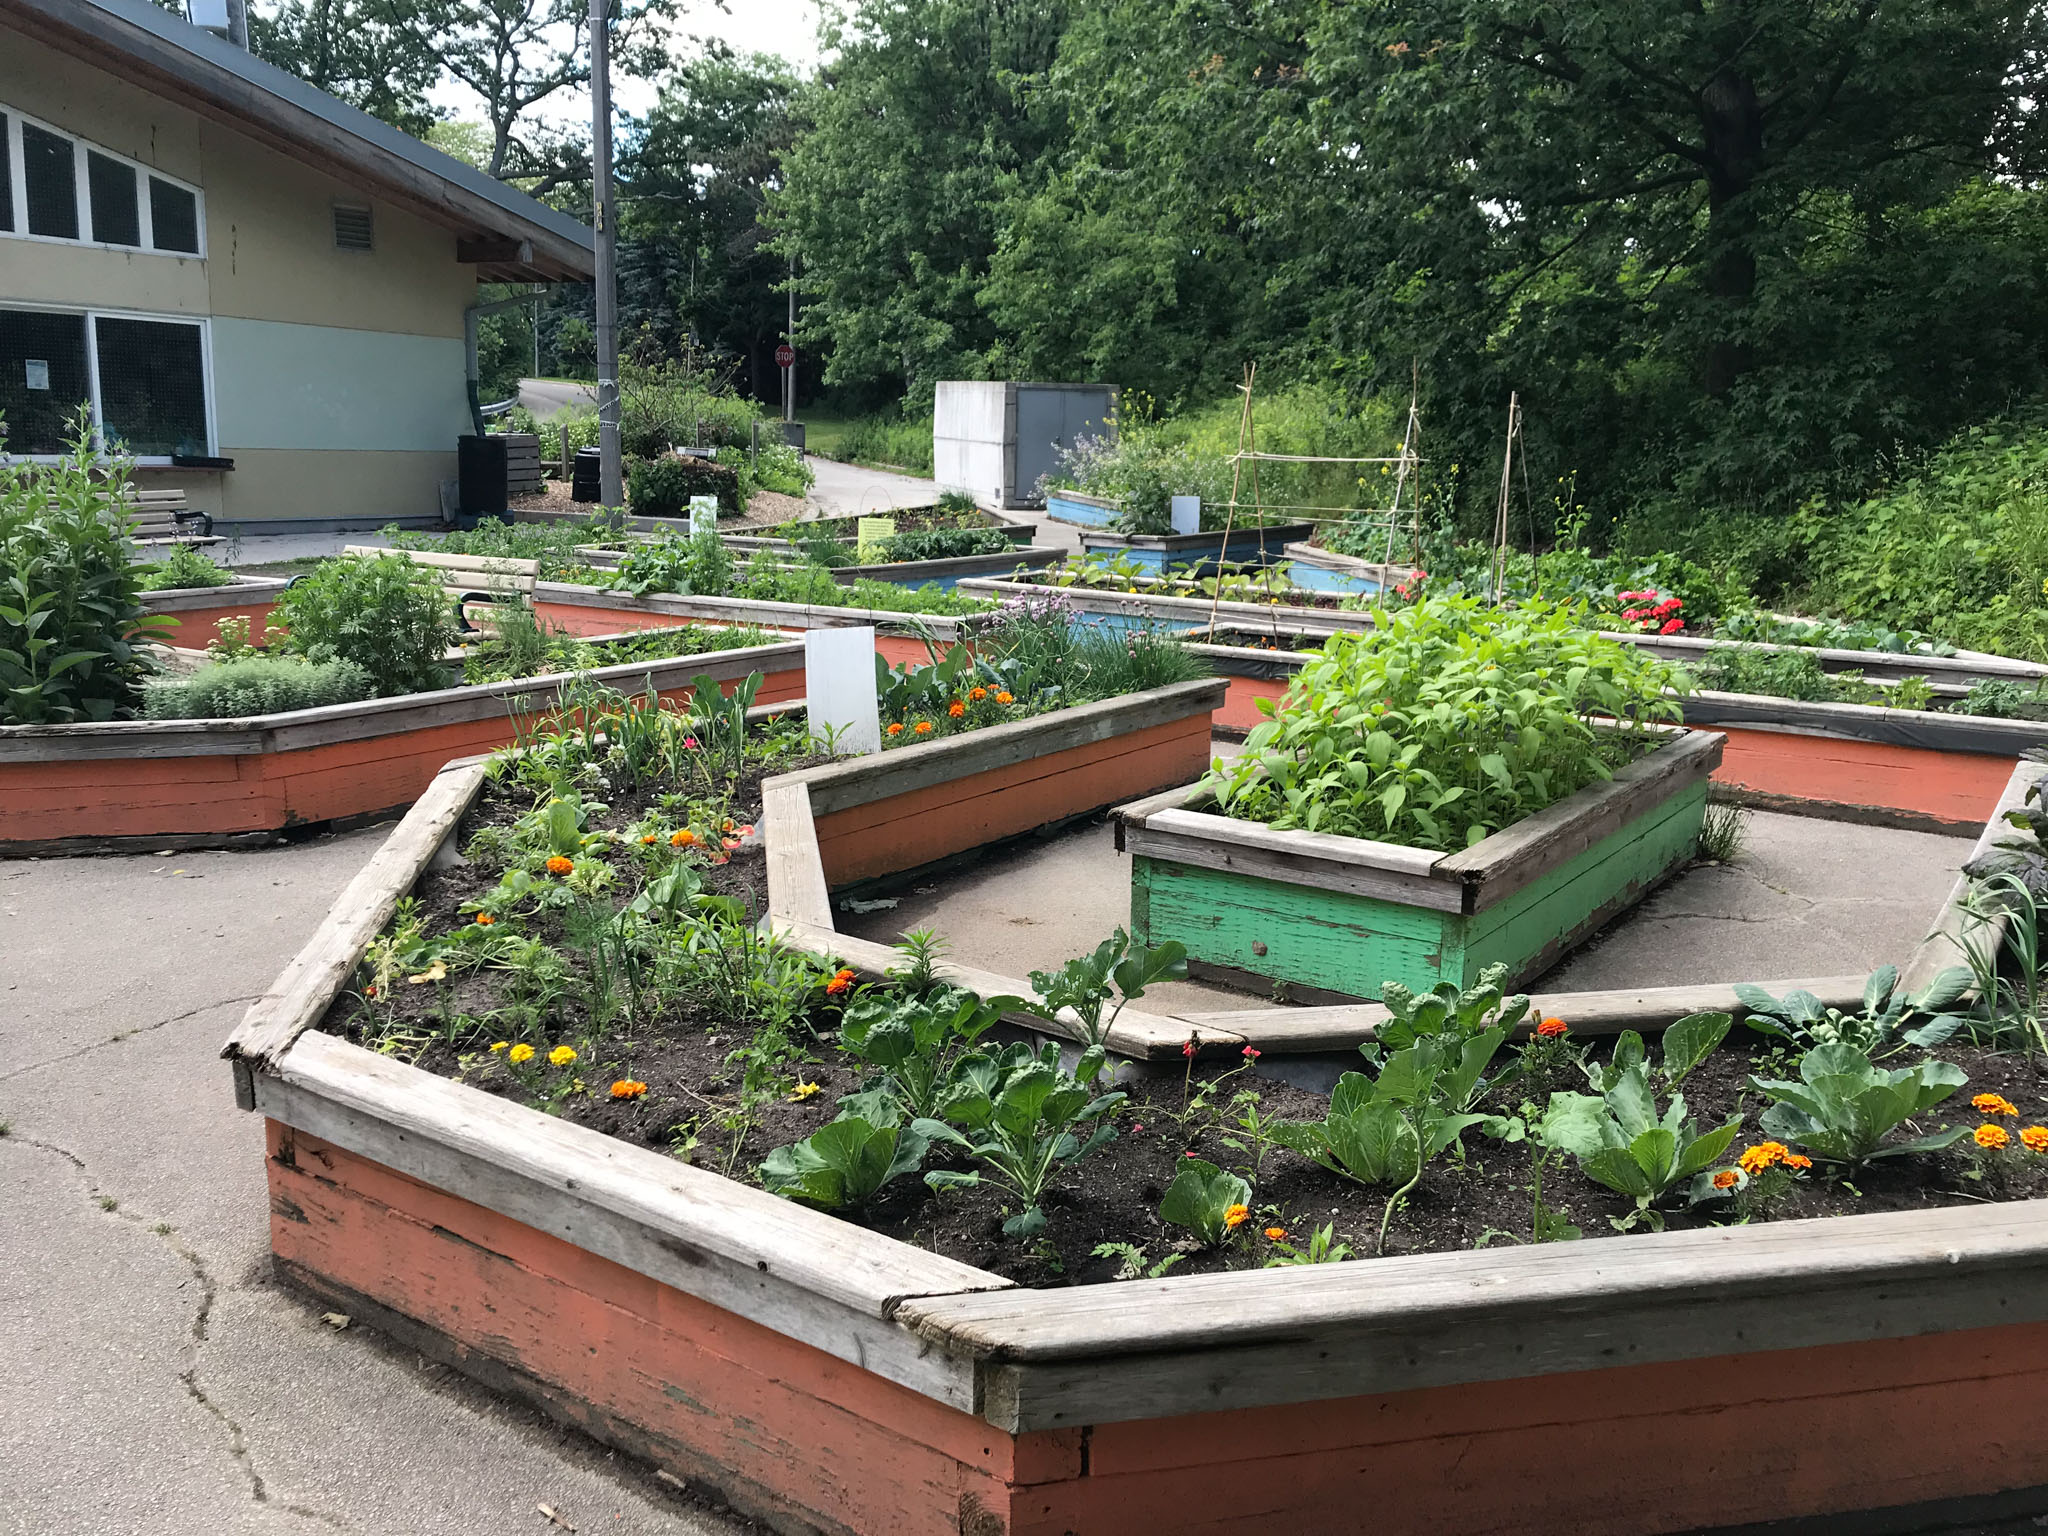 A childrens community garden